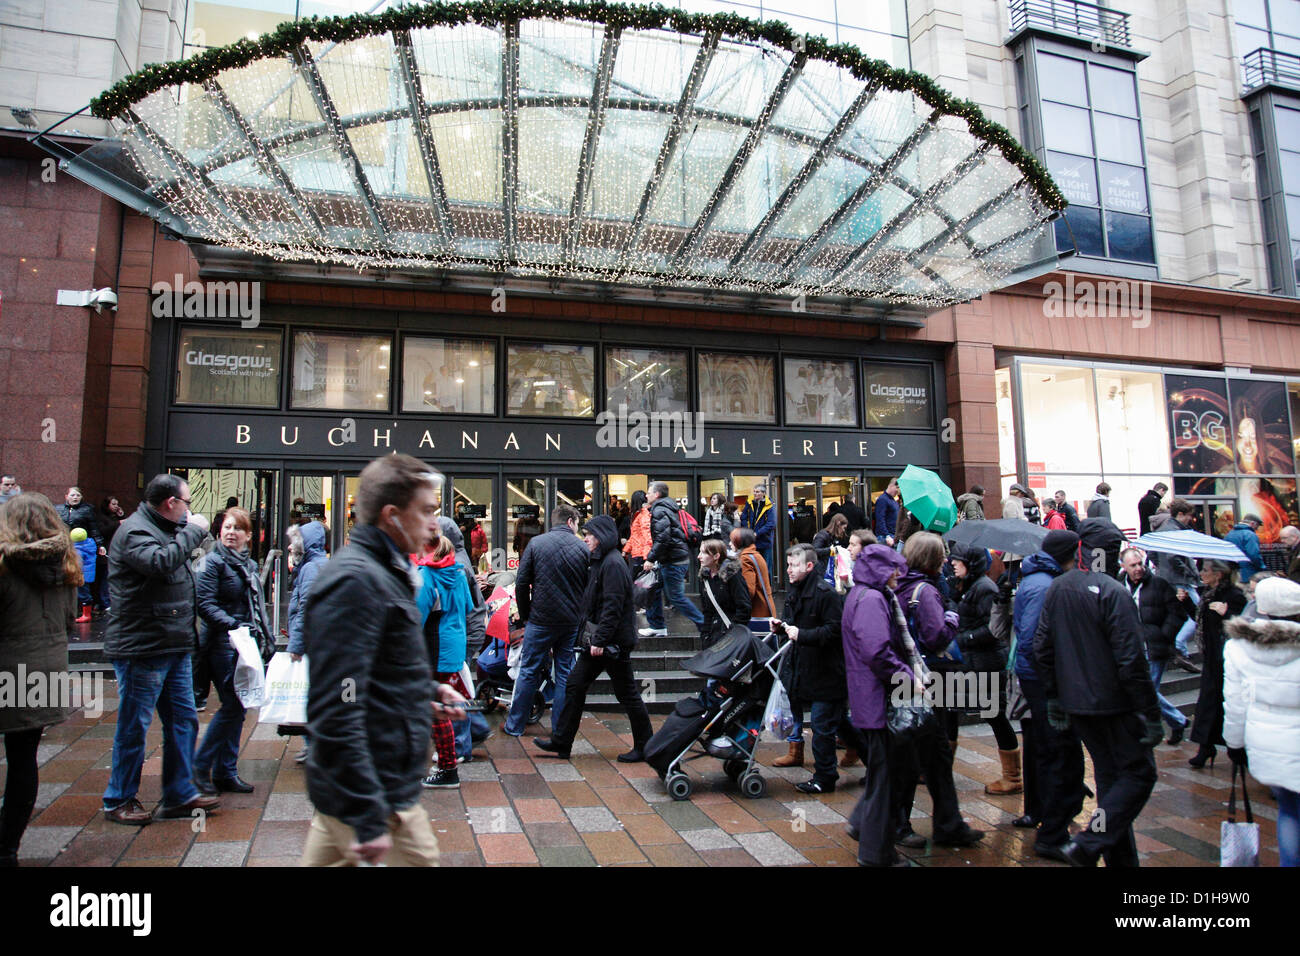 Buchanan Street, Glasgow, Scozia, Regno Unito, sabato 22 dicembre 2012. Shopping natalizio nel centro della città accanto al Buchanan Galleries Shopping Centre Foto Stock